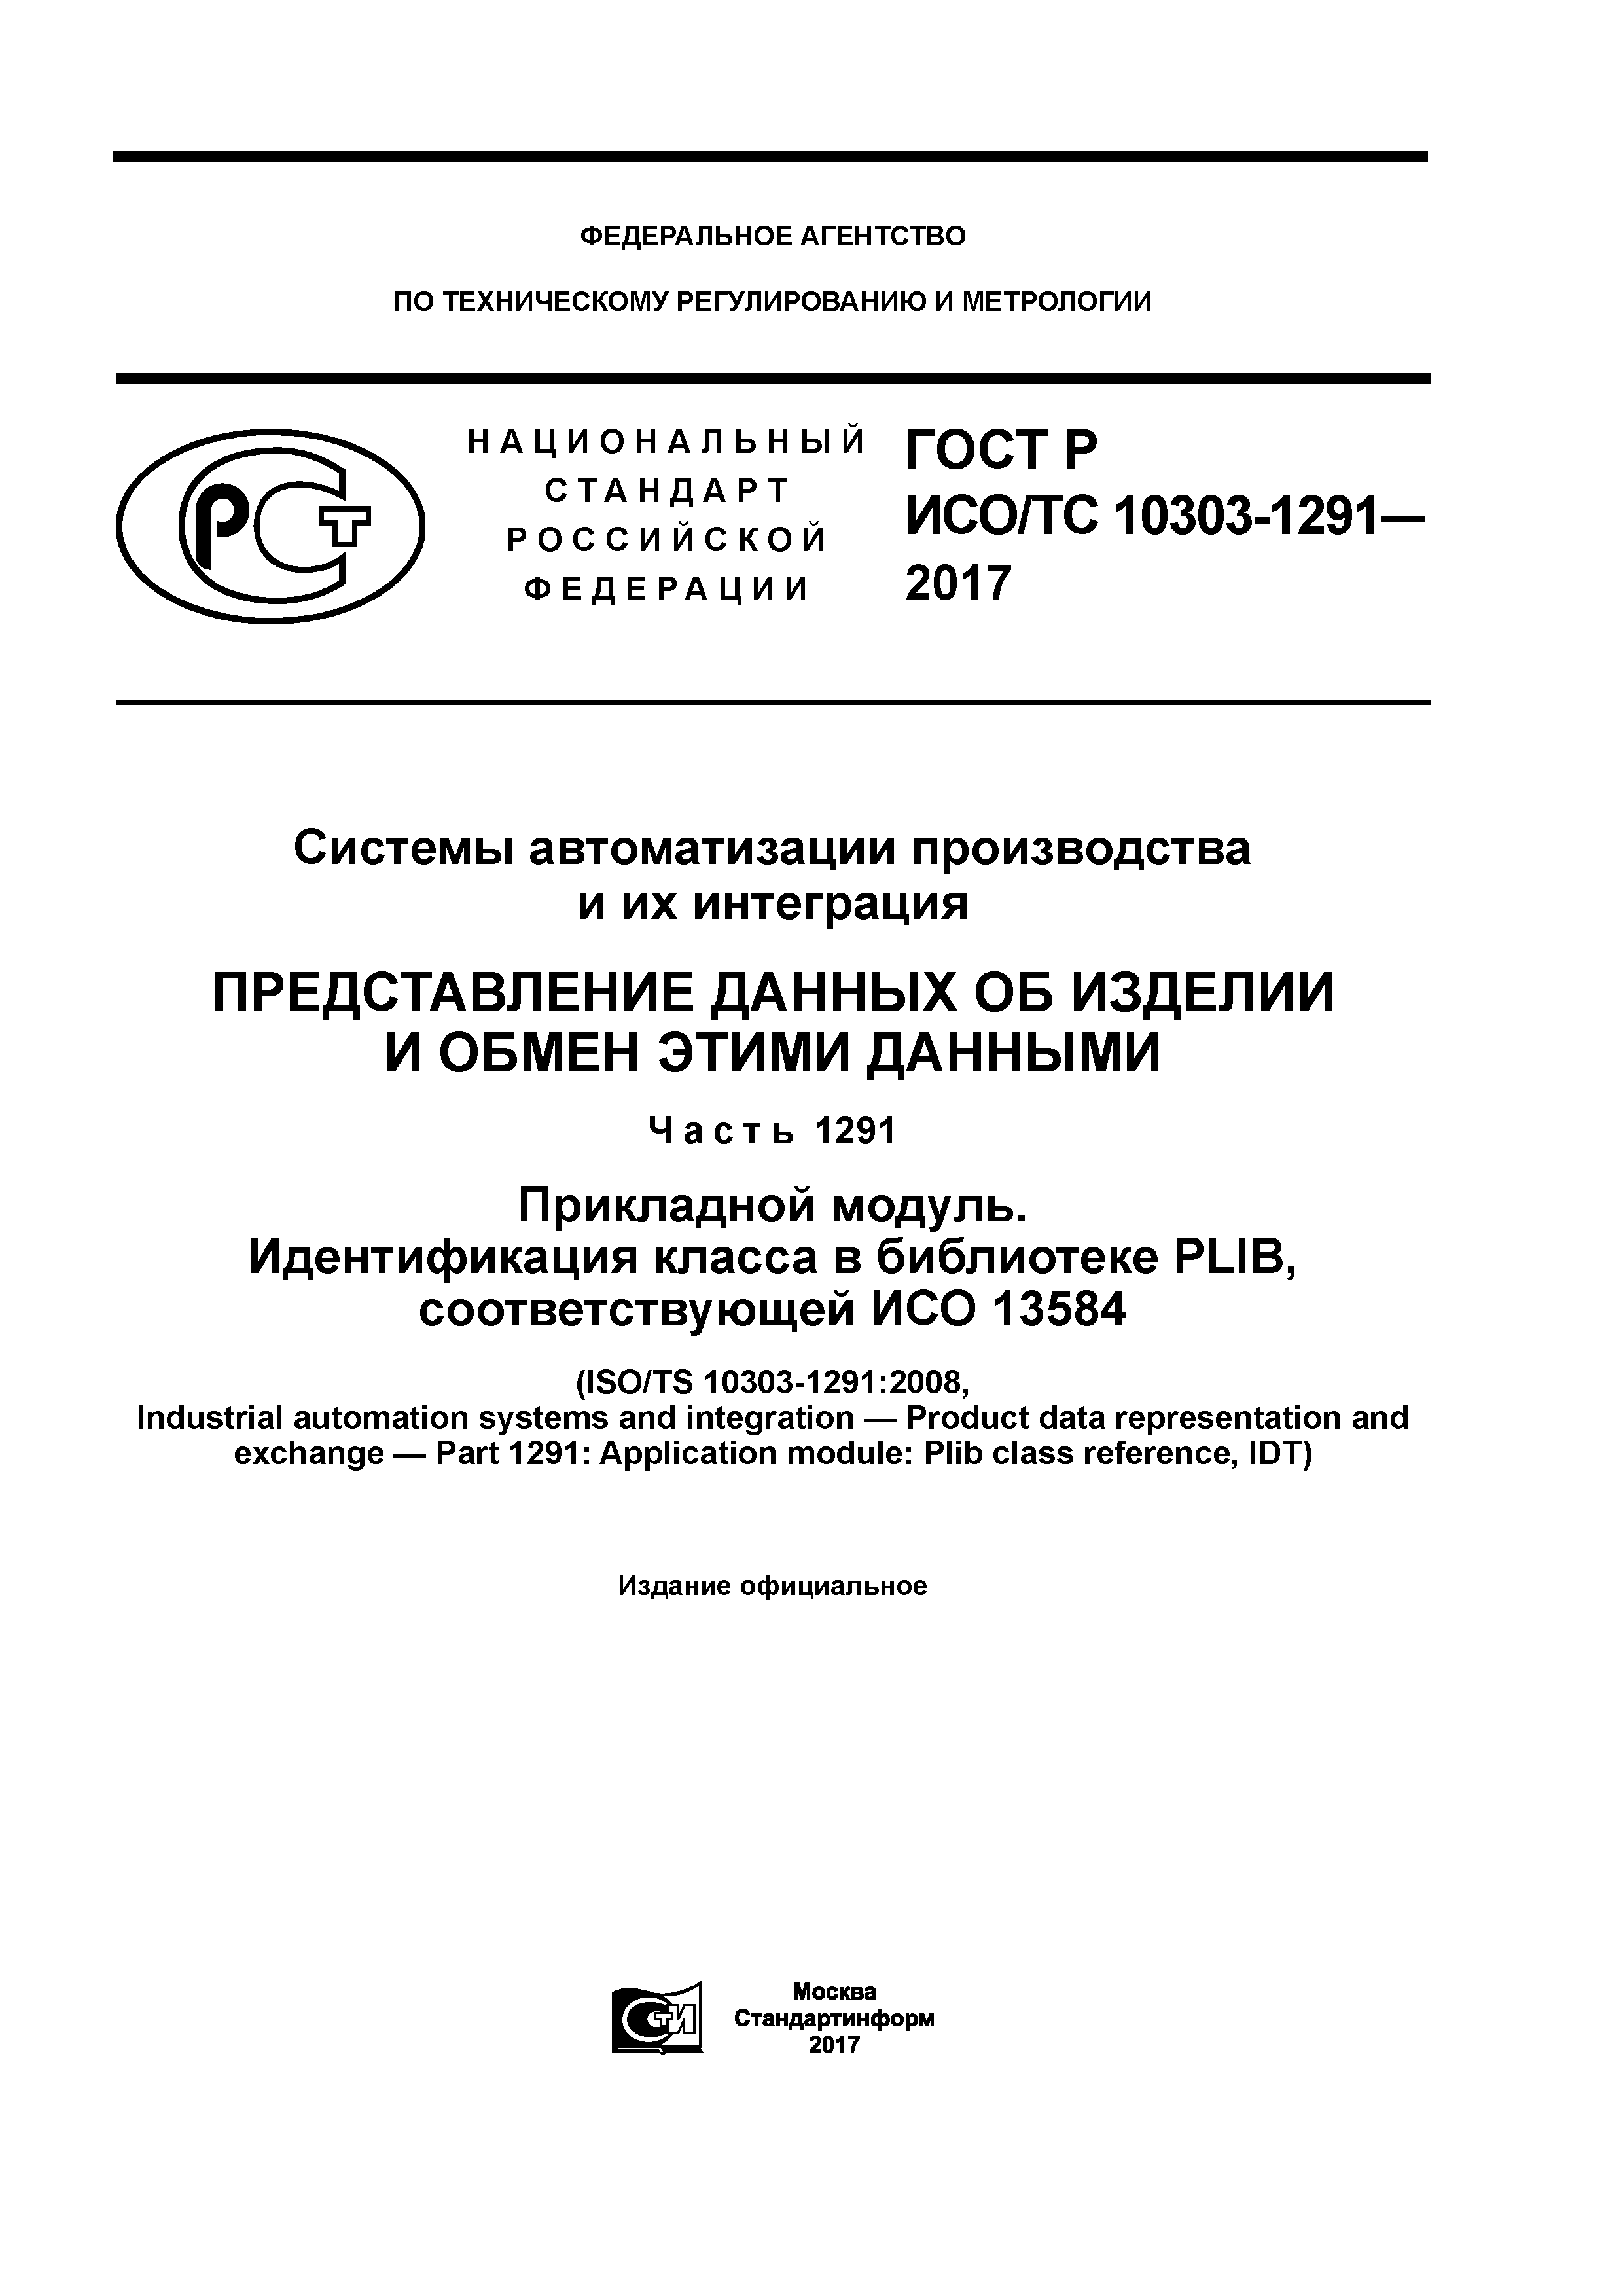 ГОСТ Р ИСО/ТС 10303-1291-2017